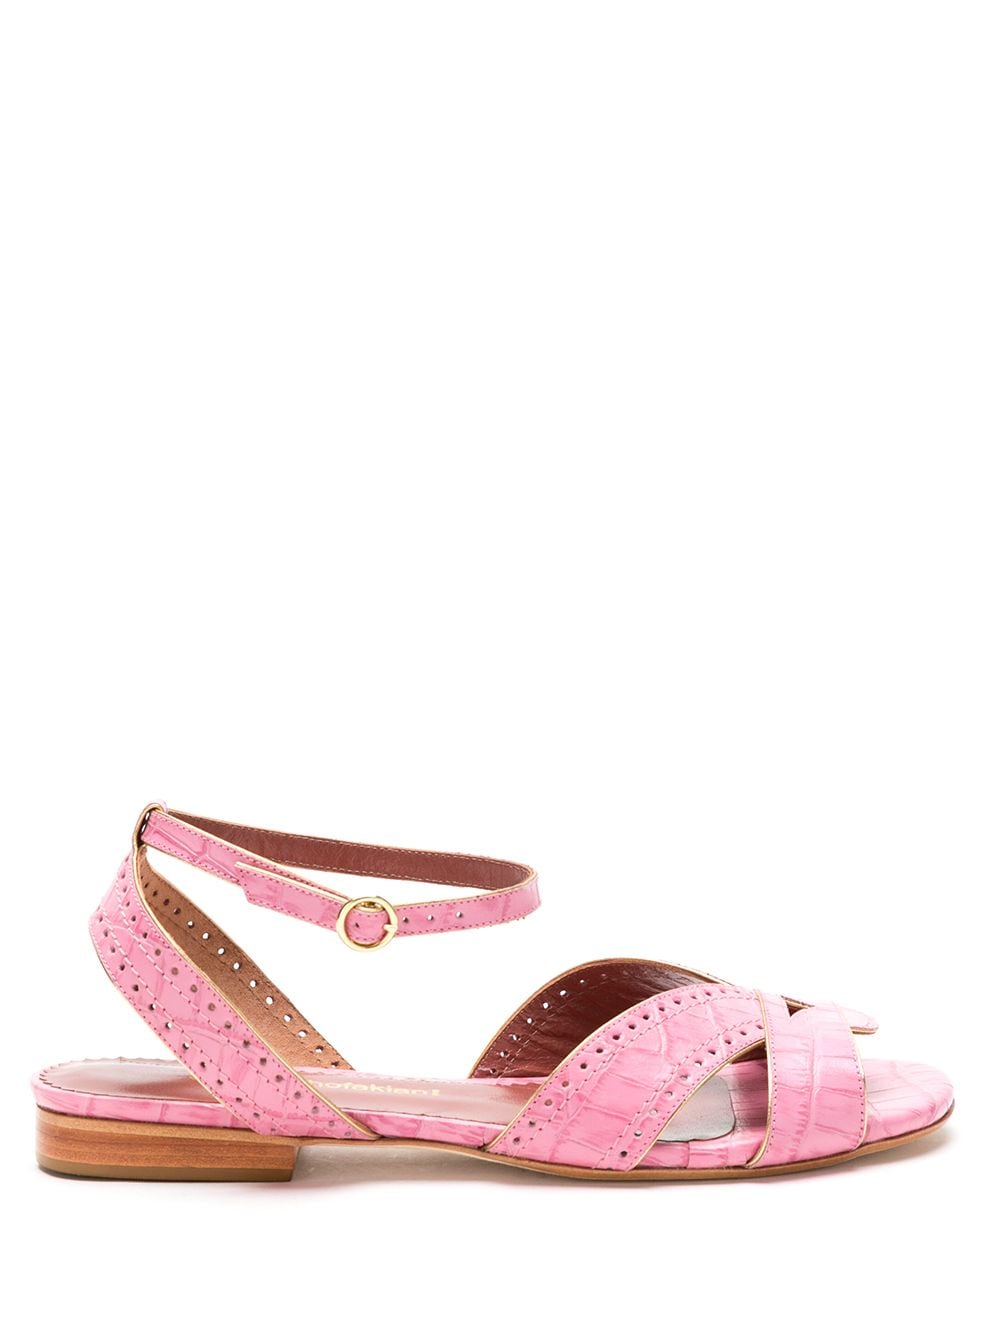 Sarah Chofakian leather Chemisier sandals - Pink von Sarah Chofakian